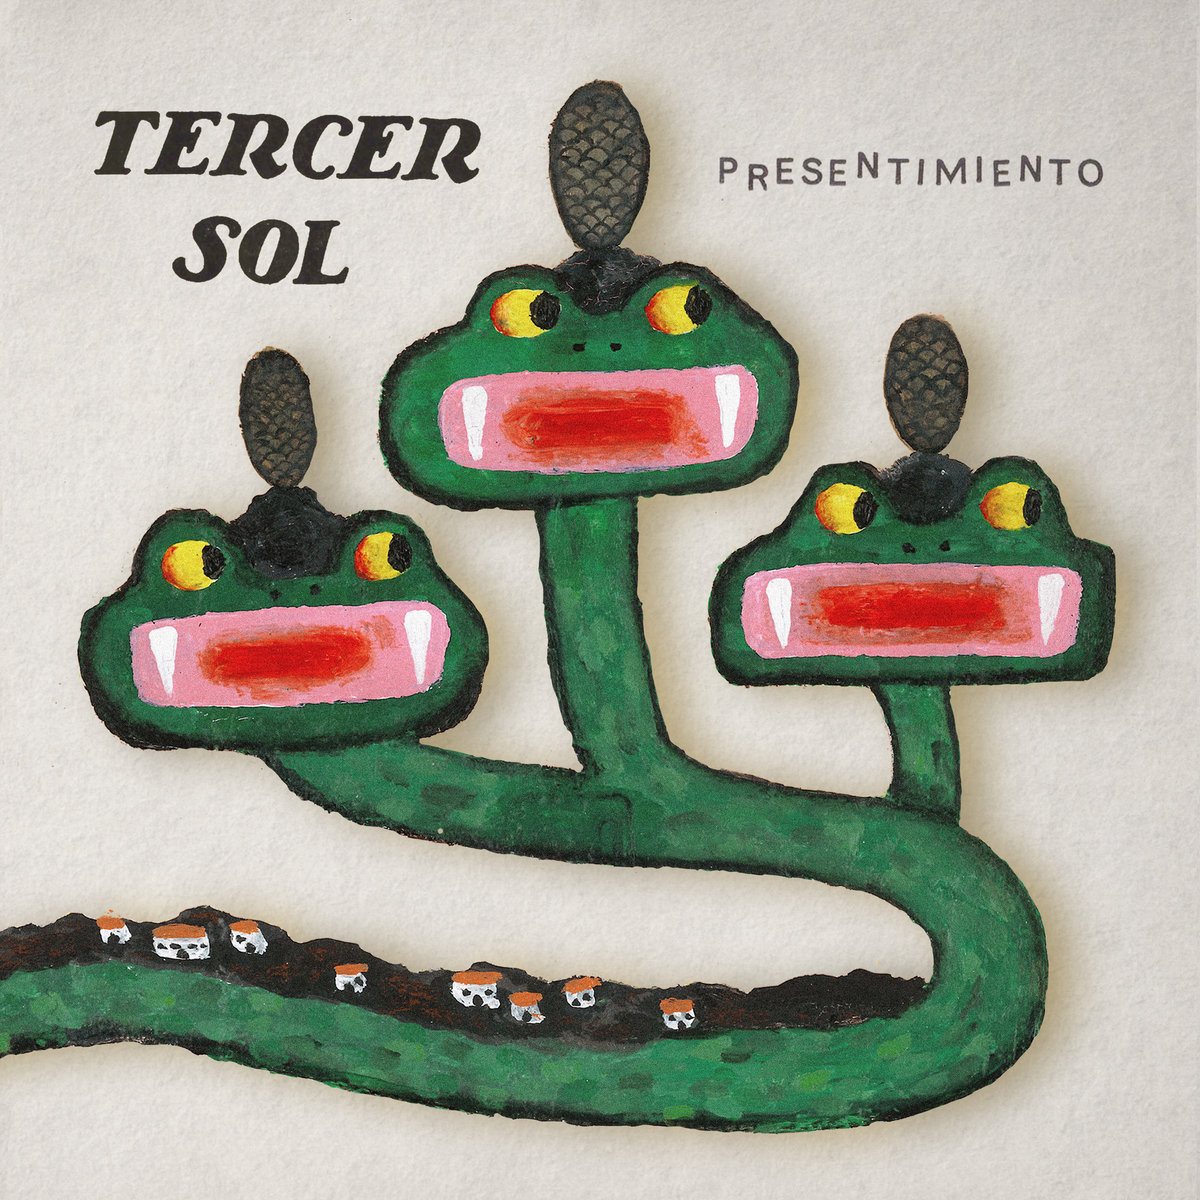 Tercer Sol "Presentimiento" LP